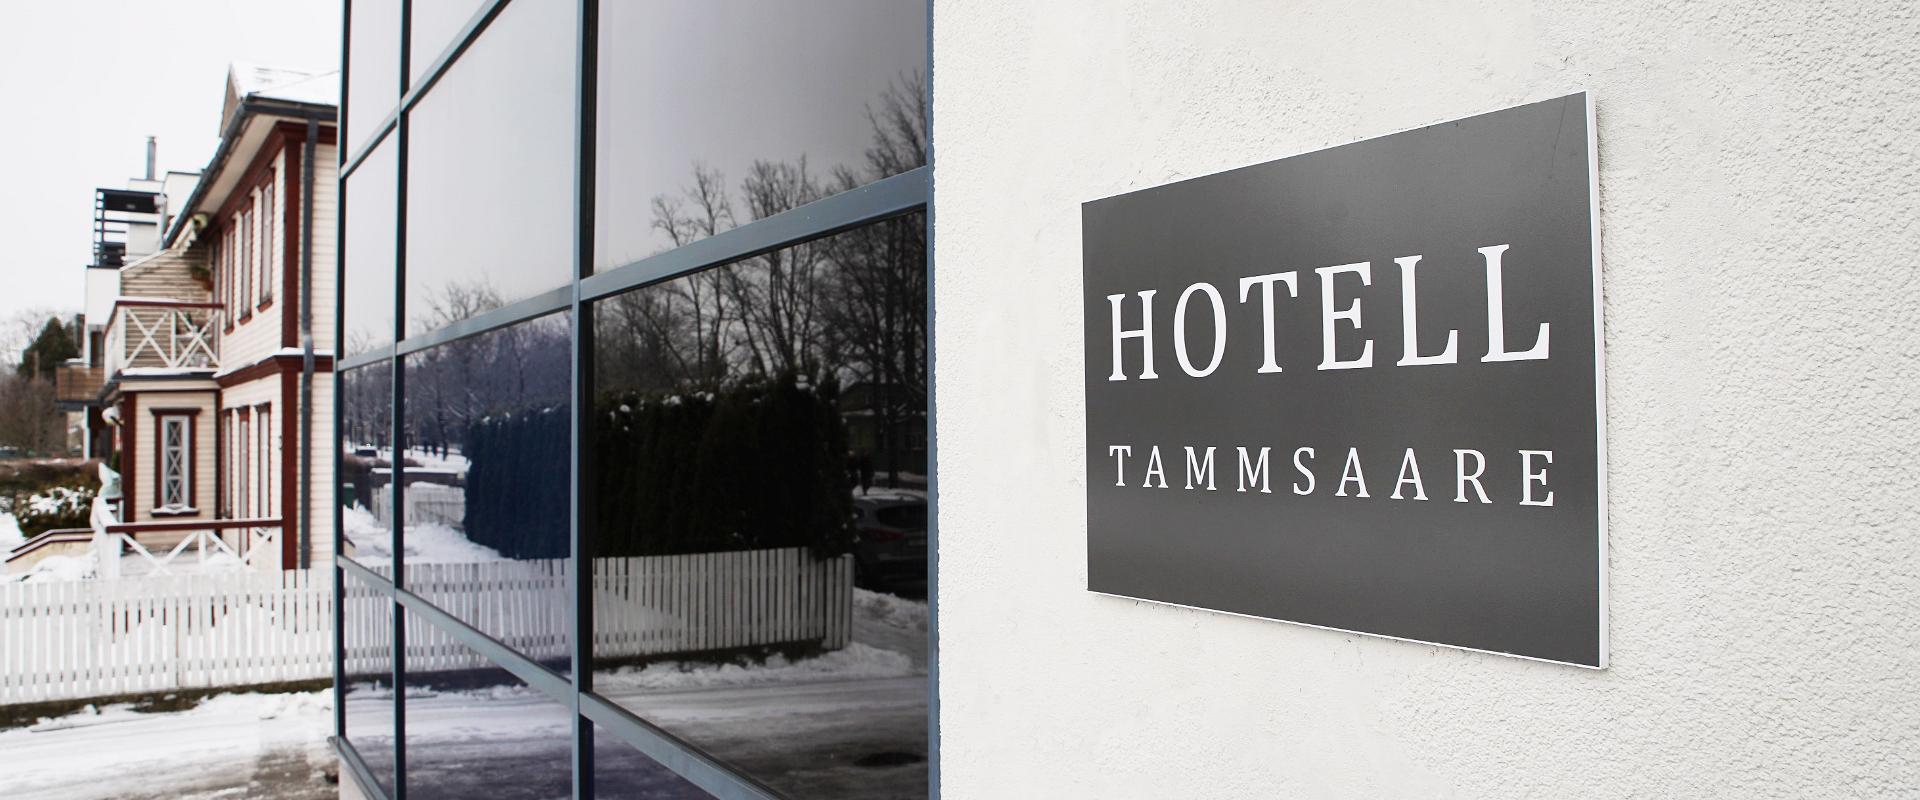 Hotell Tammsaare